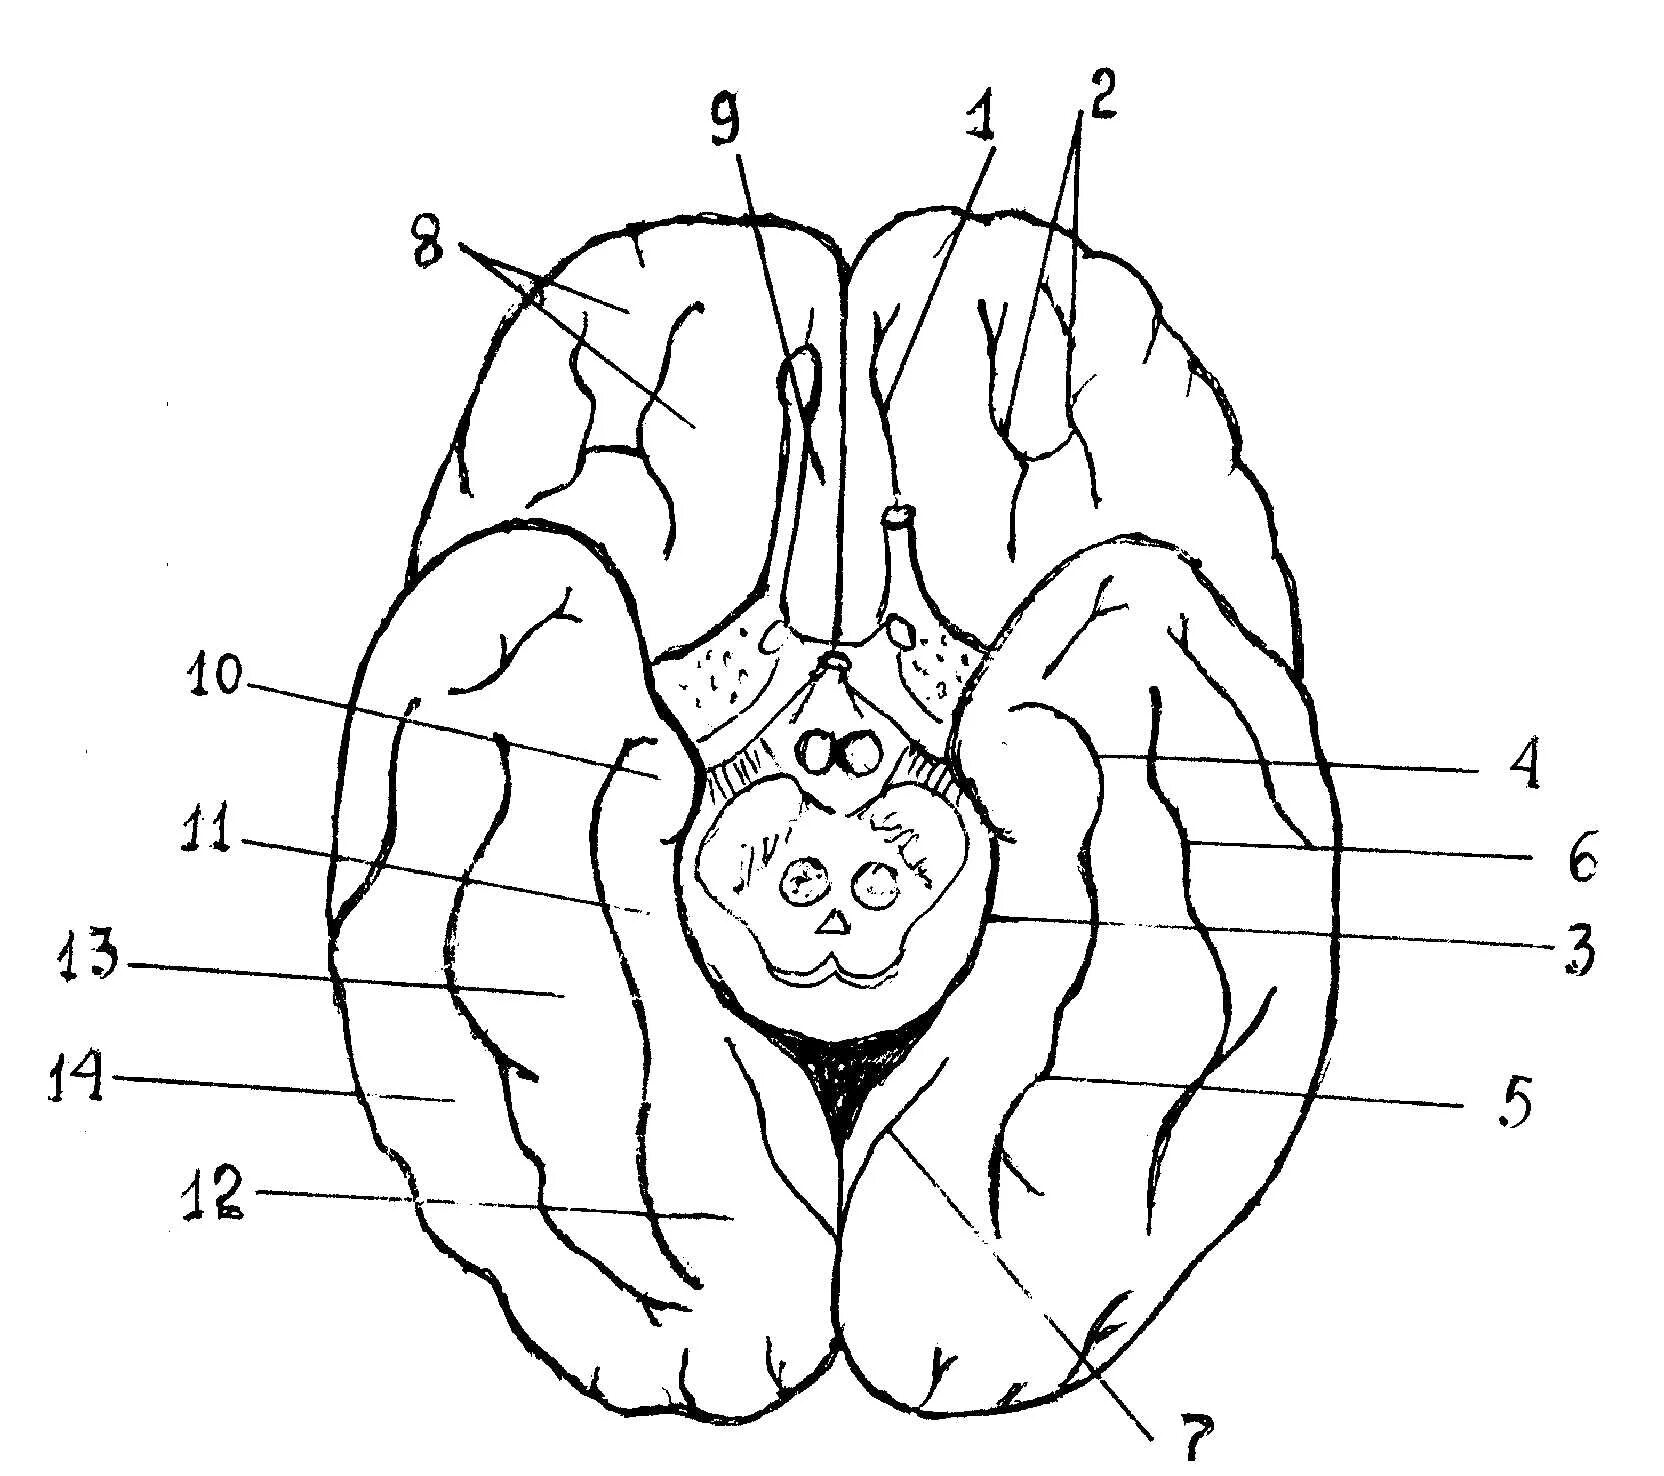 Нижняя поверхность мозга. Борозды и извилины базальной поверхности головного мозга. Нижняя поверхность головного мозга извилины. Нижняя поверхность головного мозга борозды. Борозды и извилины нижней поверхности полушария большого мозга.